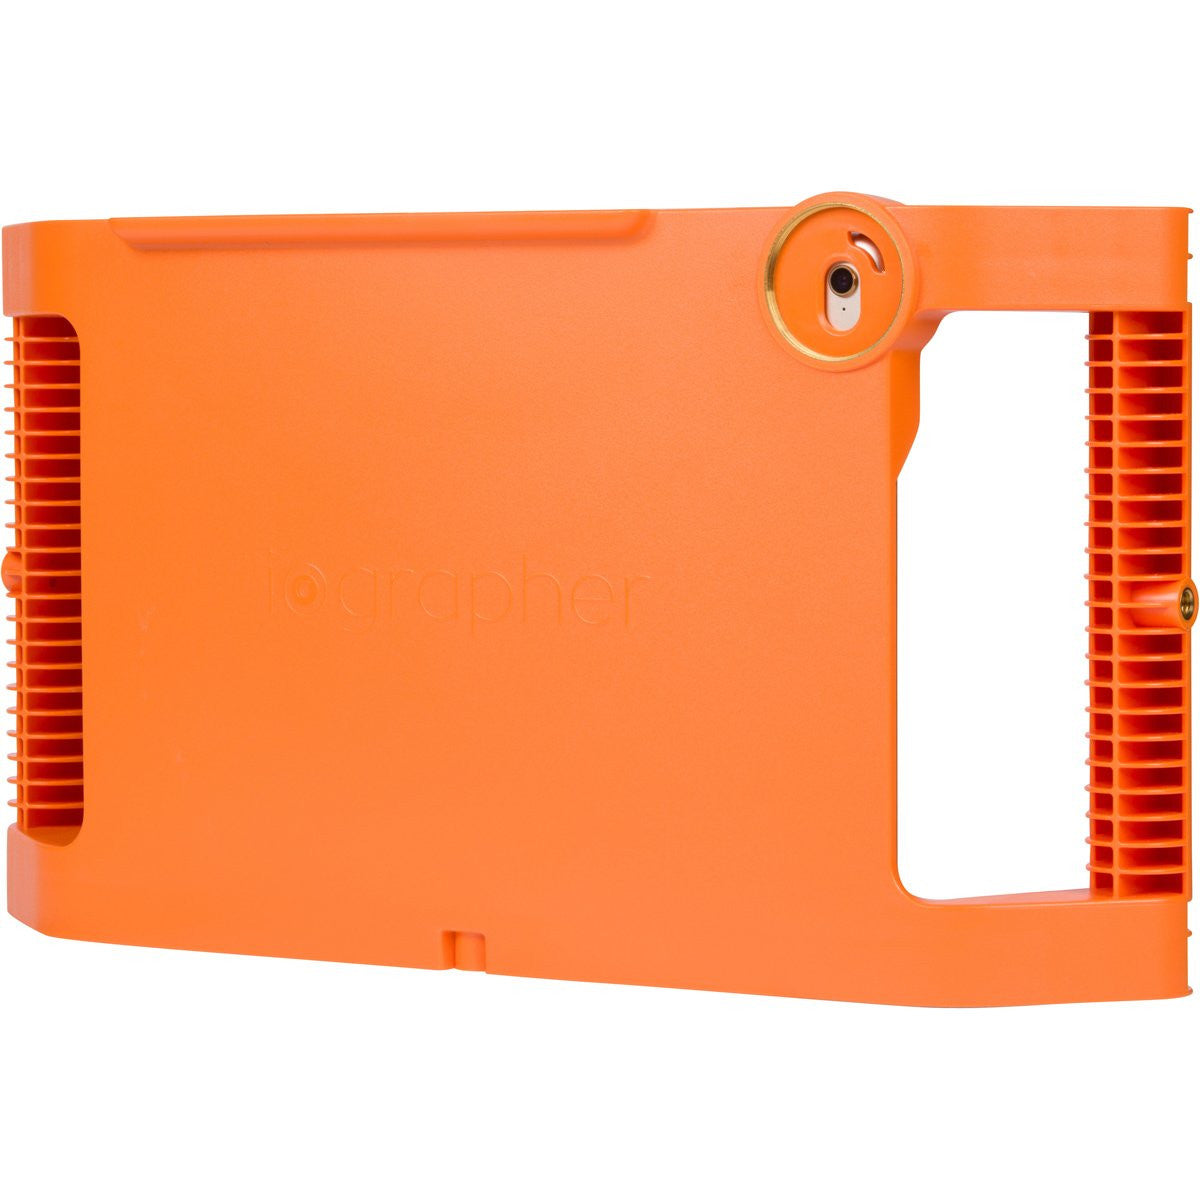 iPad Mini 4 Case - Orange